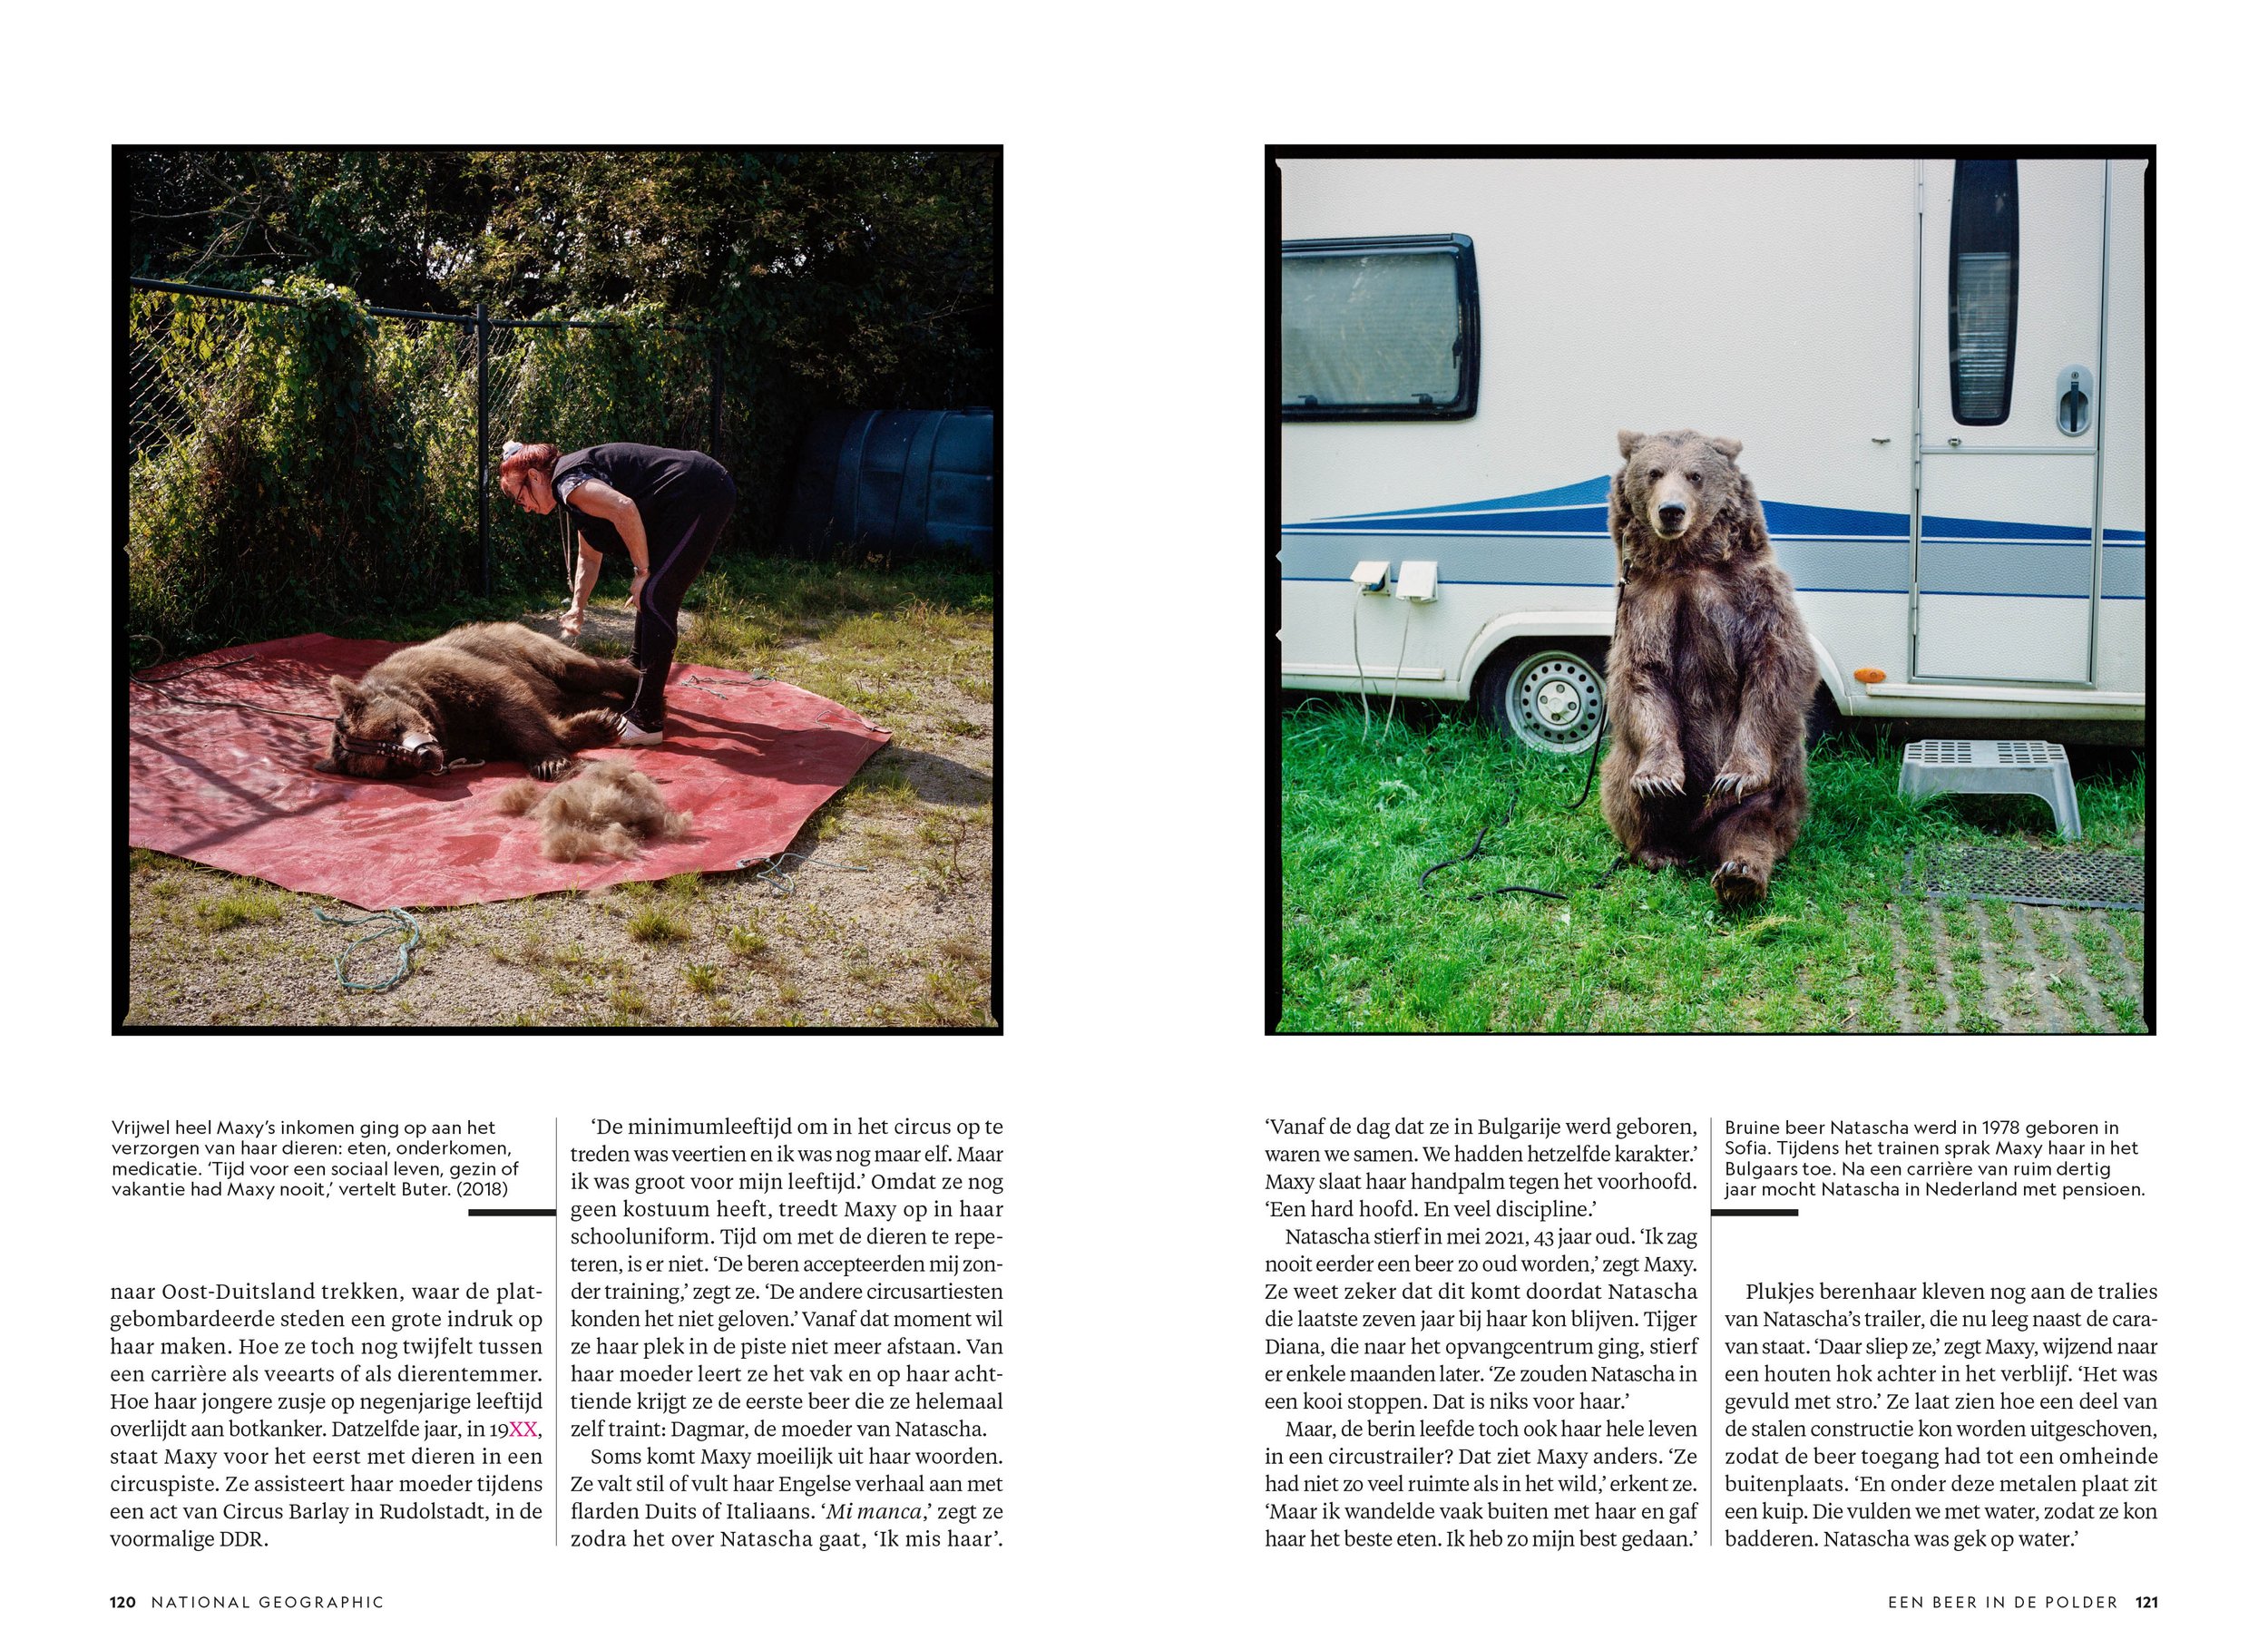 211217 - National Geographic Magazine -Een beer in de polder - 5.jpg